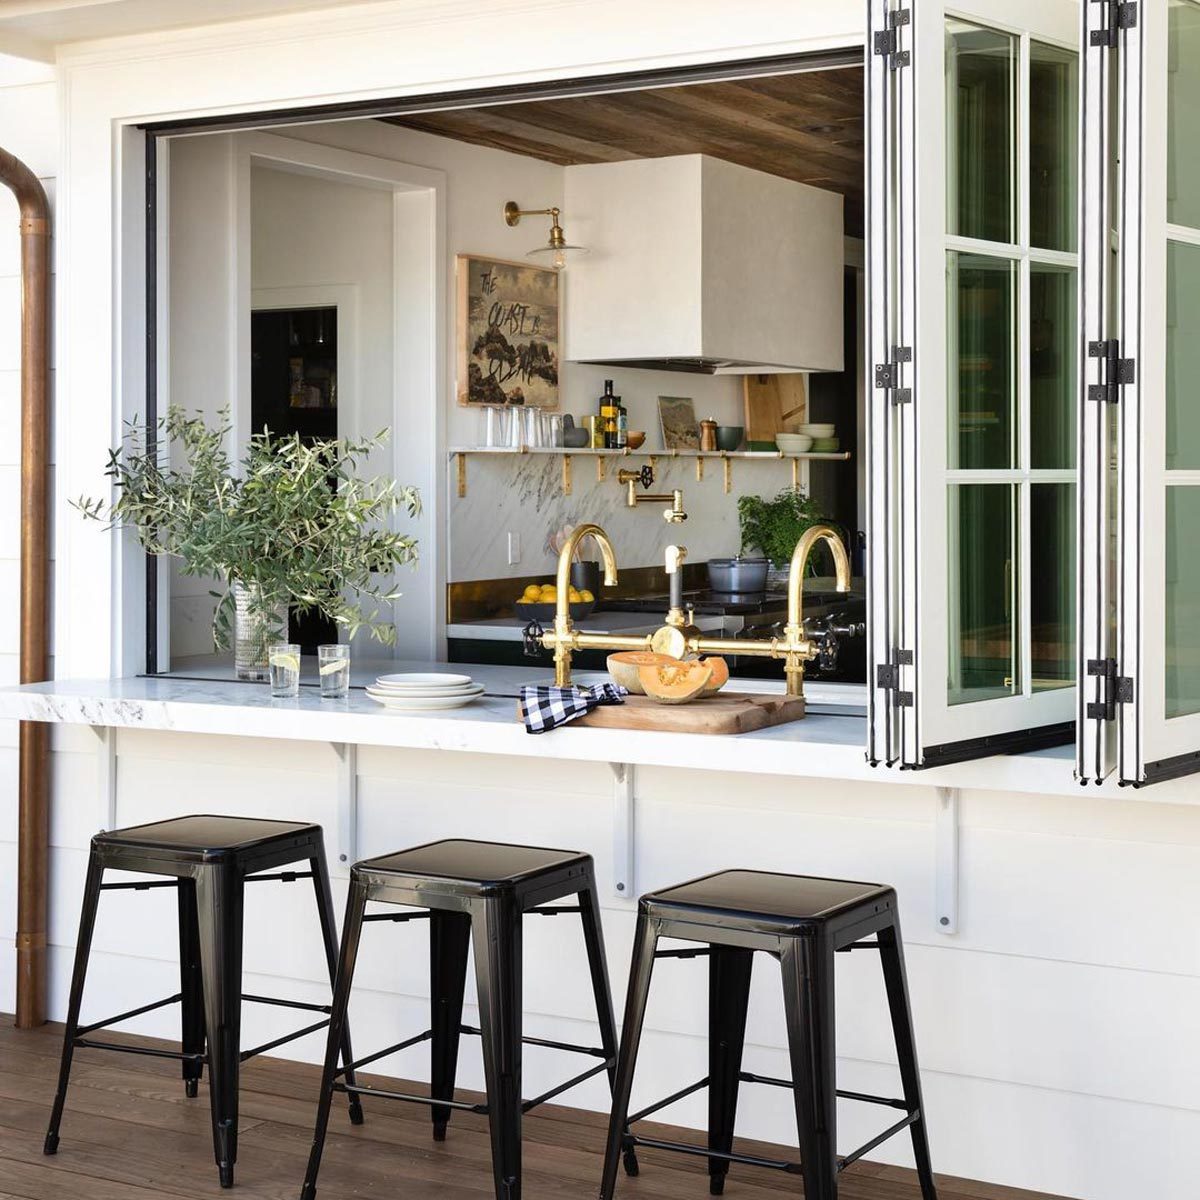 Indoor-outdoor kitchen bar